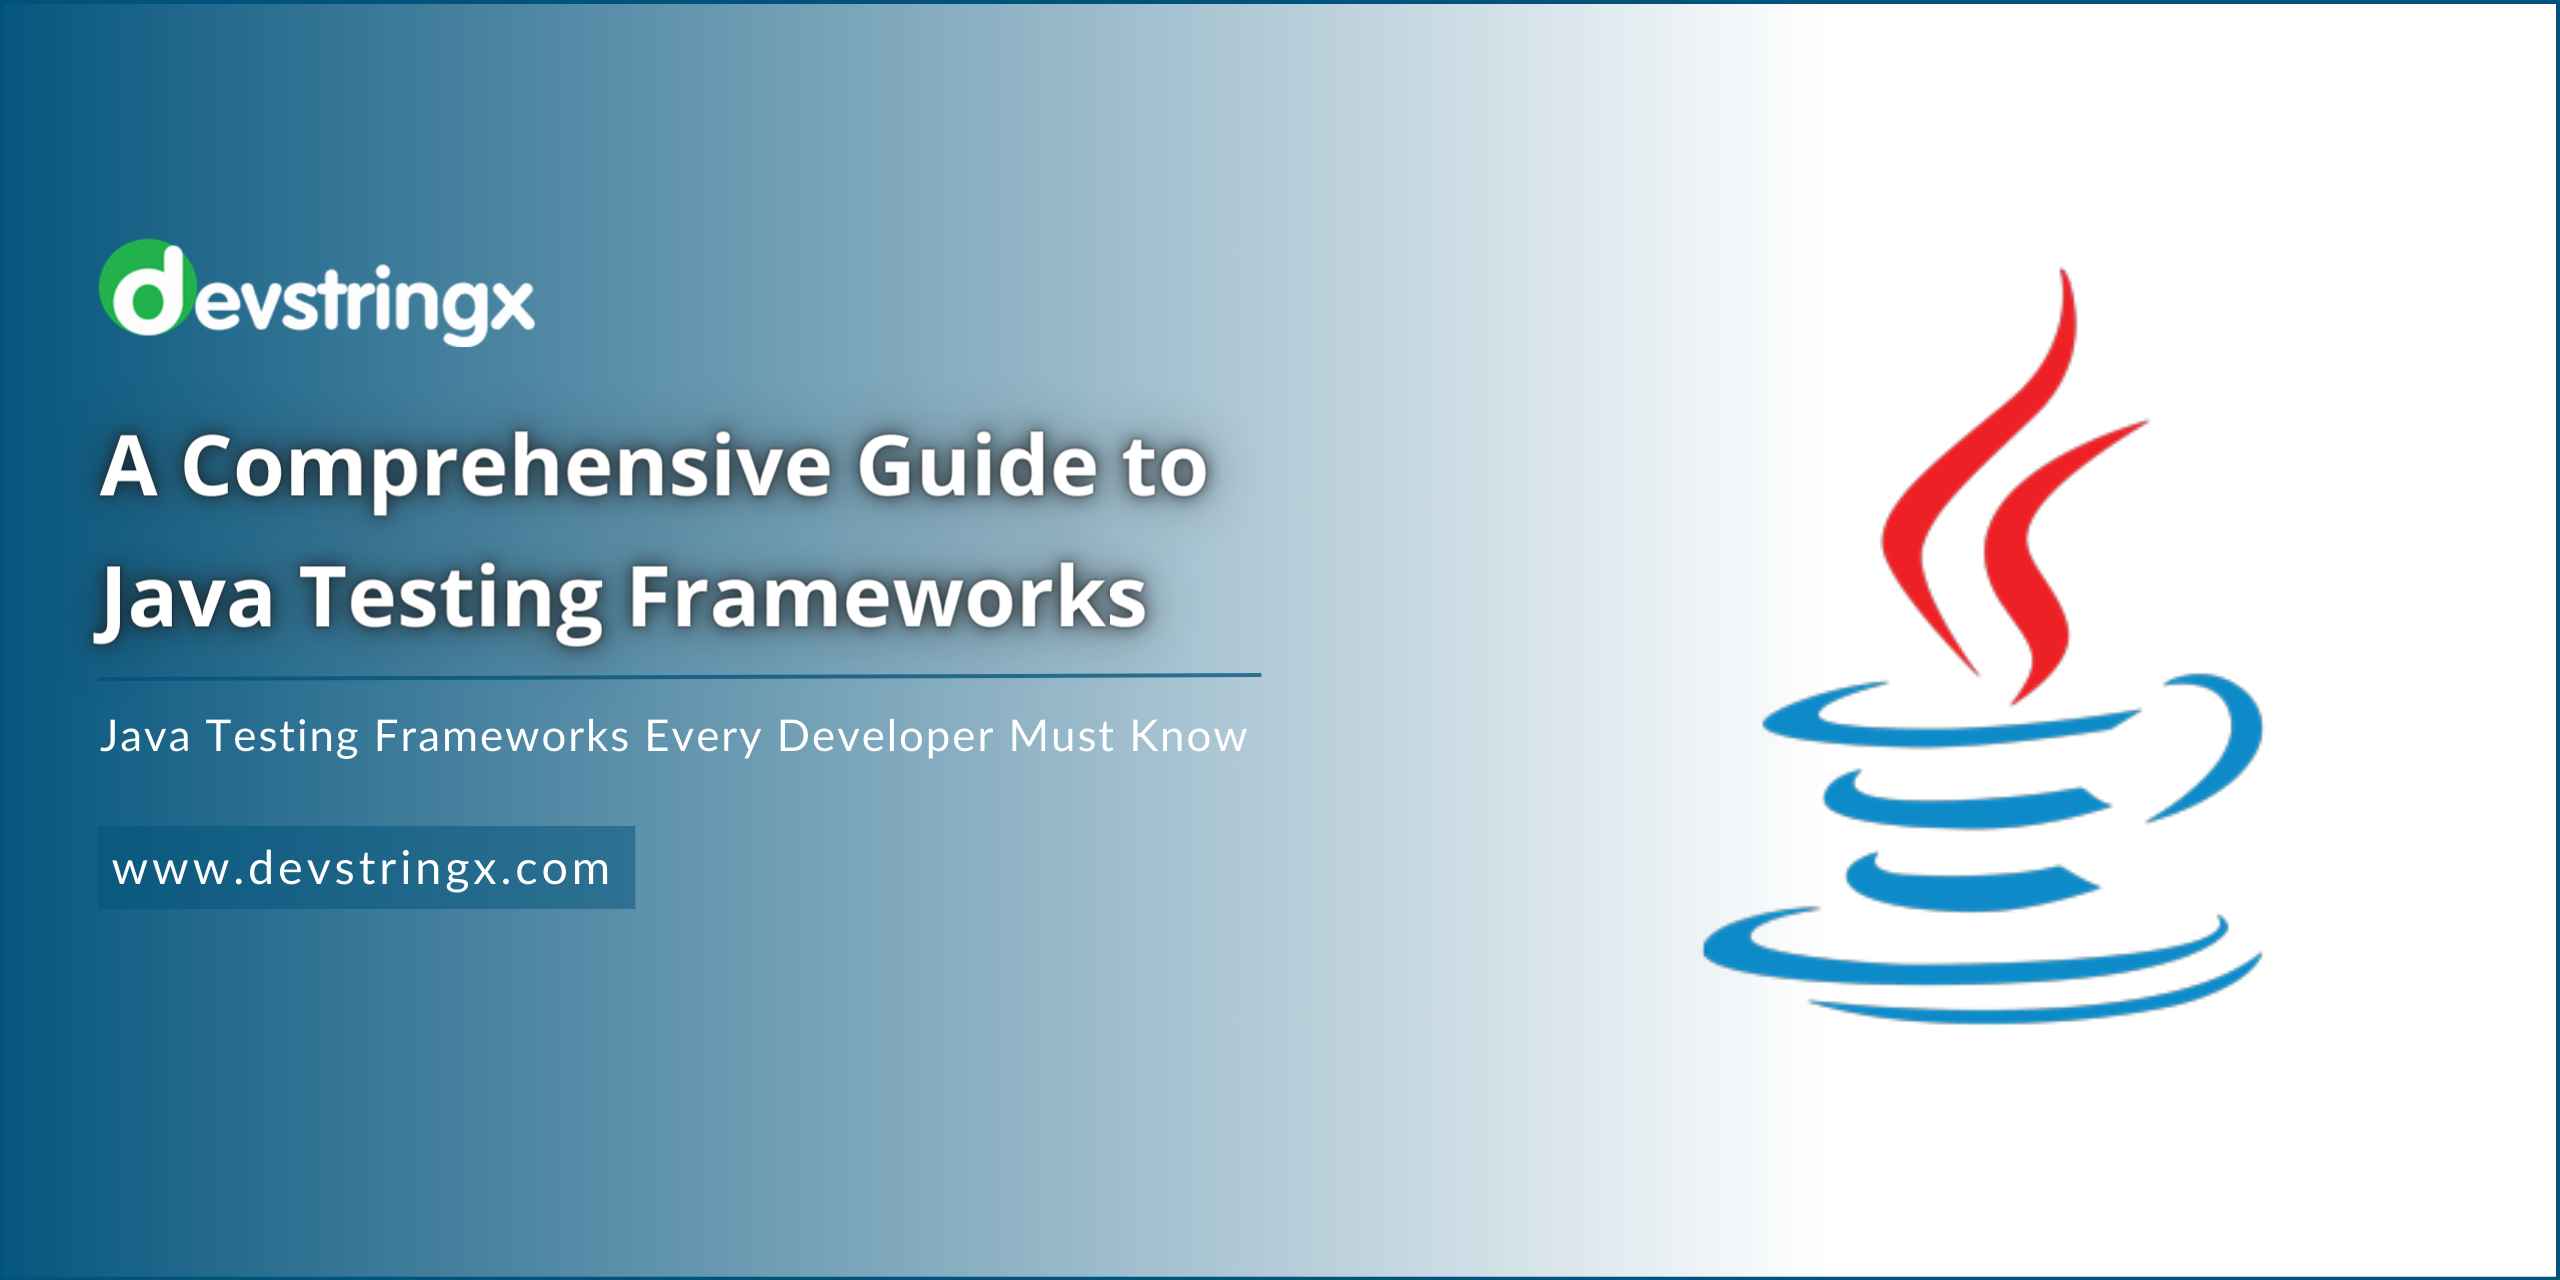 Feature image for Java Testing Frameworks blog